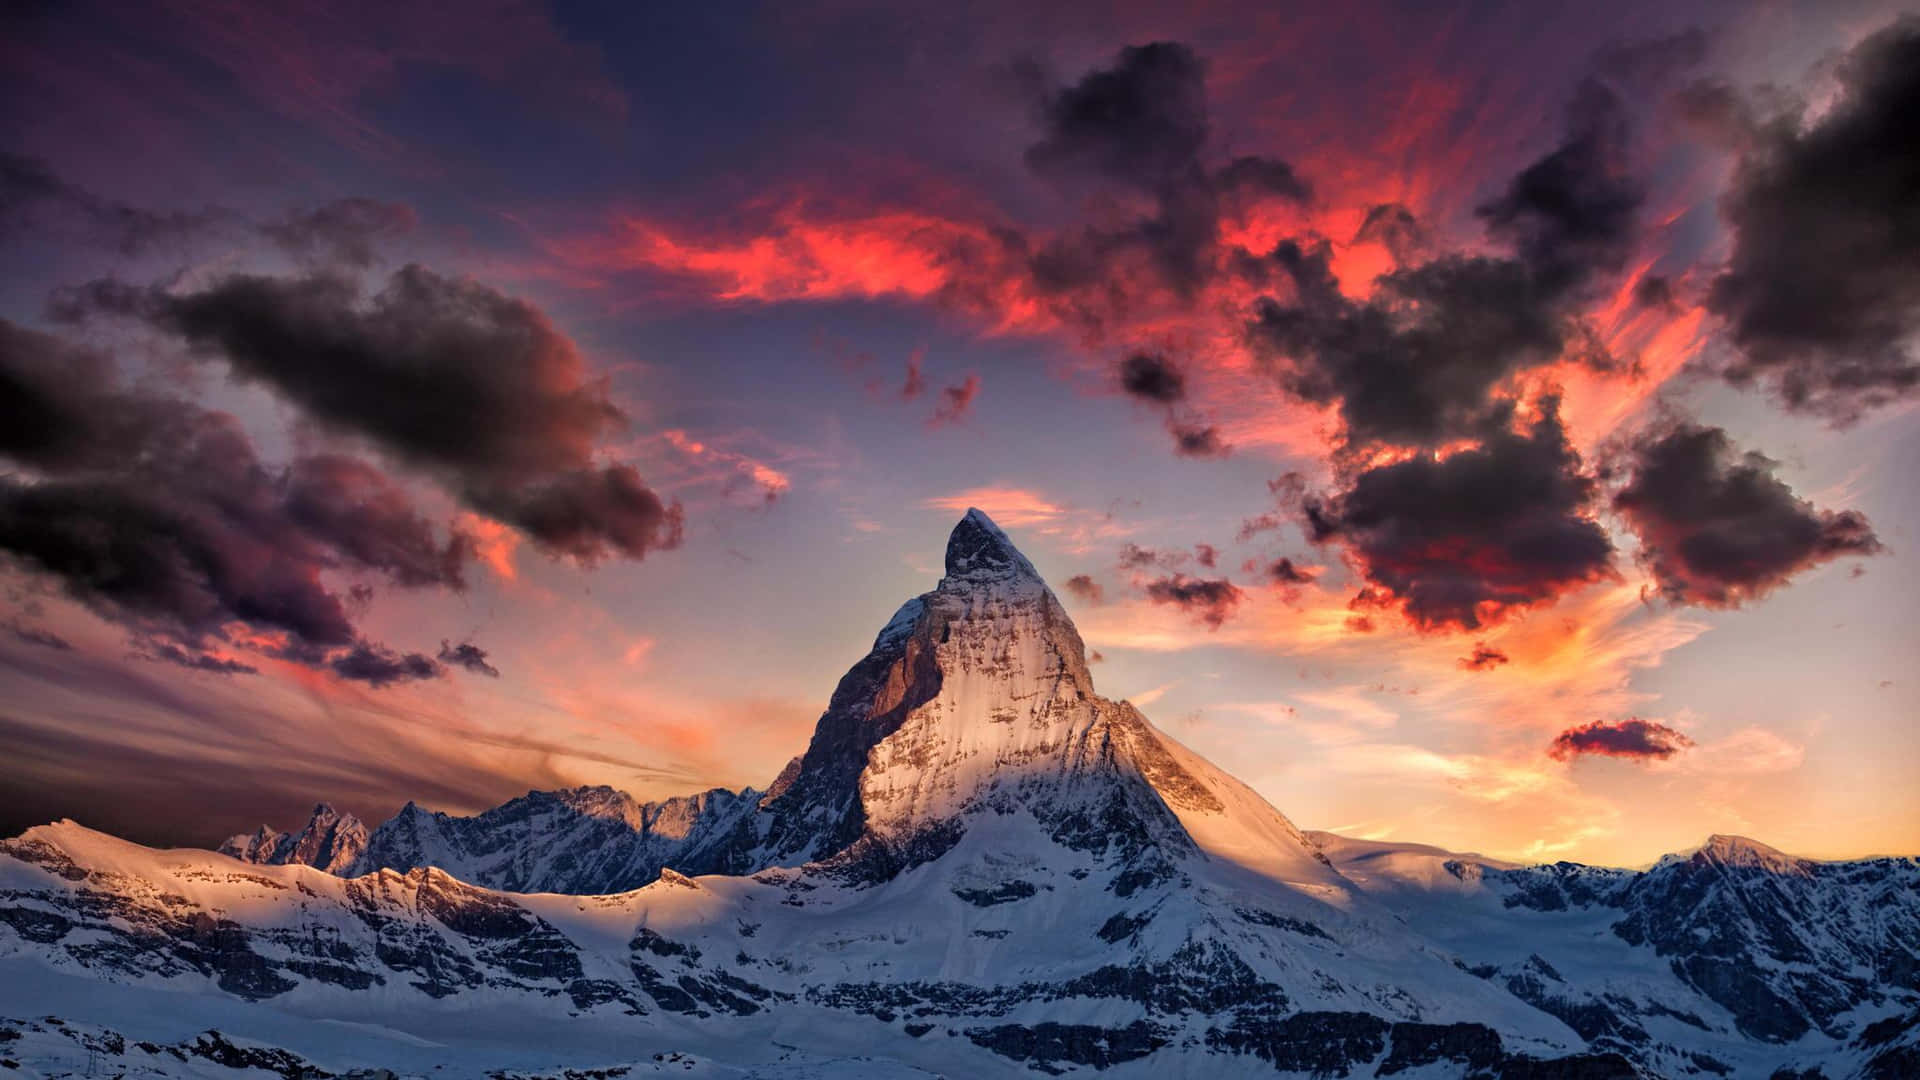 Cinematic View Of Matterhorn Wallpaper